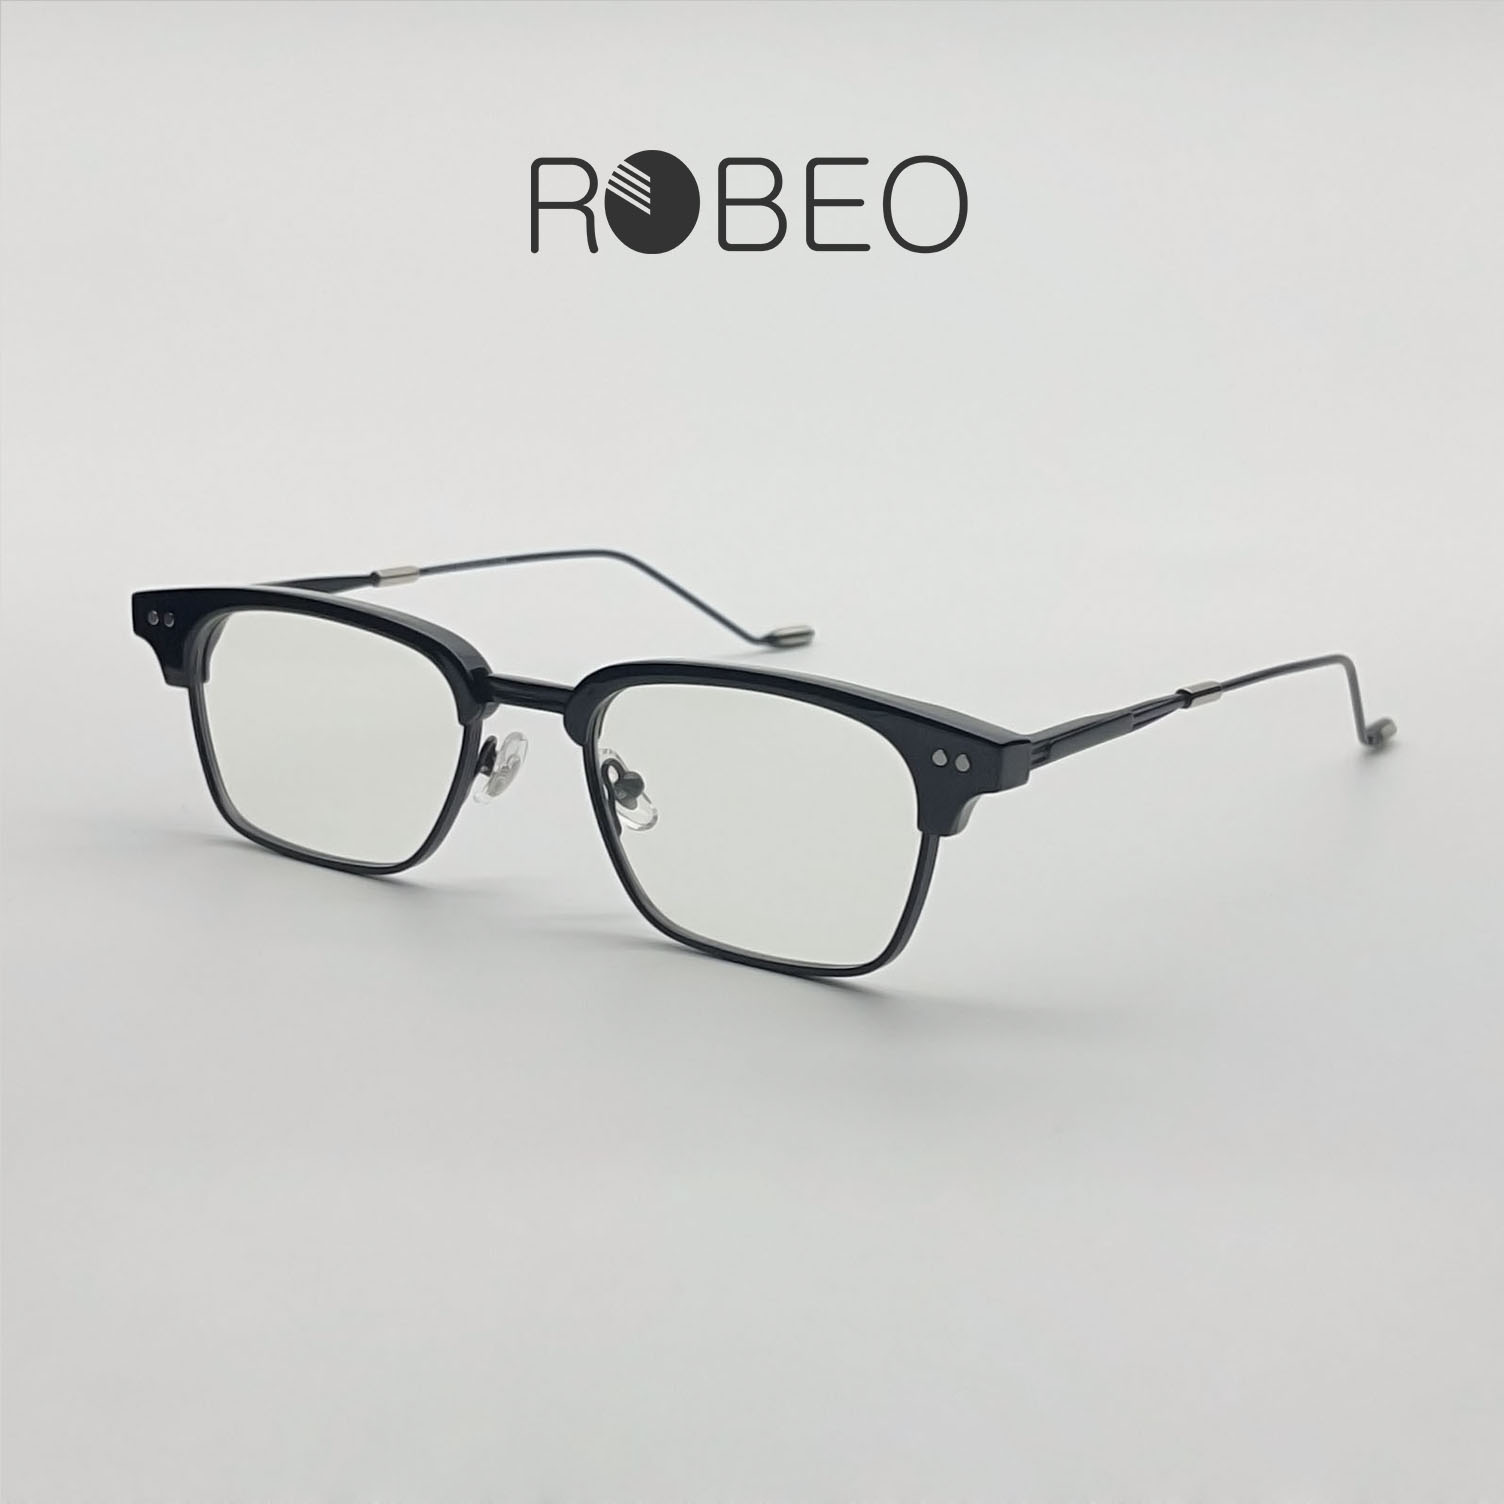 Gọng kính cận nam nữ ROBEO - R0423 , kính giả cận sao hàn mắt chống ánh sáng xanh - Fullbox